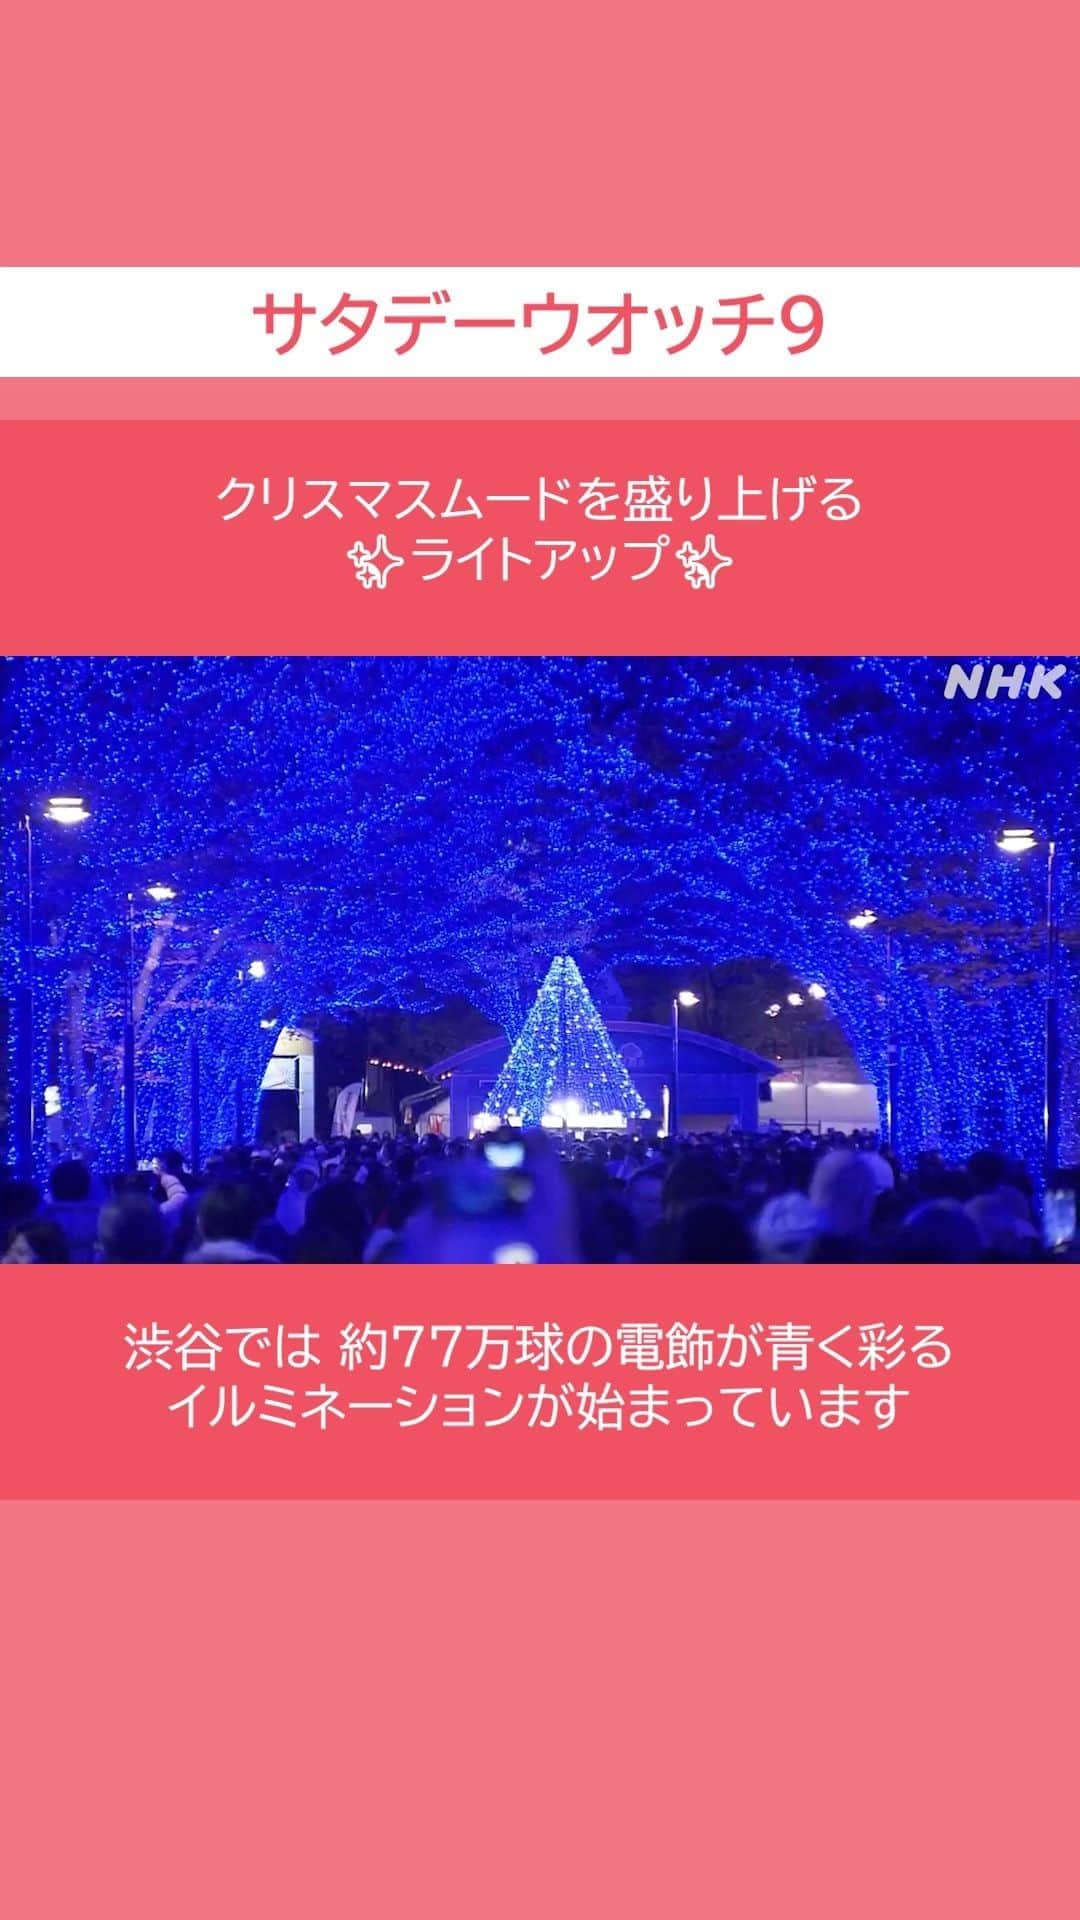 NHK「ニュースウオッチ９」のインスタグラム：「クリスマスムードを盛り上げる 　　 ✨#ライトアップ✨  #渋谷 では 約77万球の電飾が青く彩る イルミネーションが始まっています  #サタデーウオッチ9 #土曜夜8時55分 #NHK #NHKプラス #テレビ #ニュース #ショート動画 🎄」